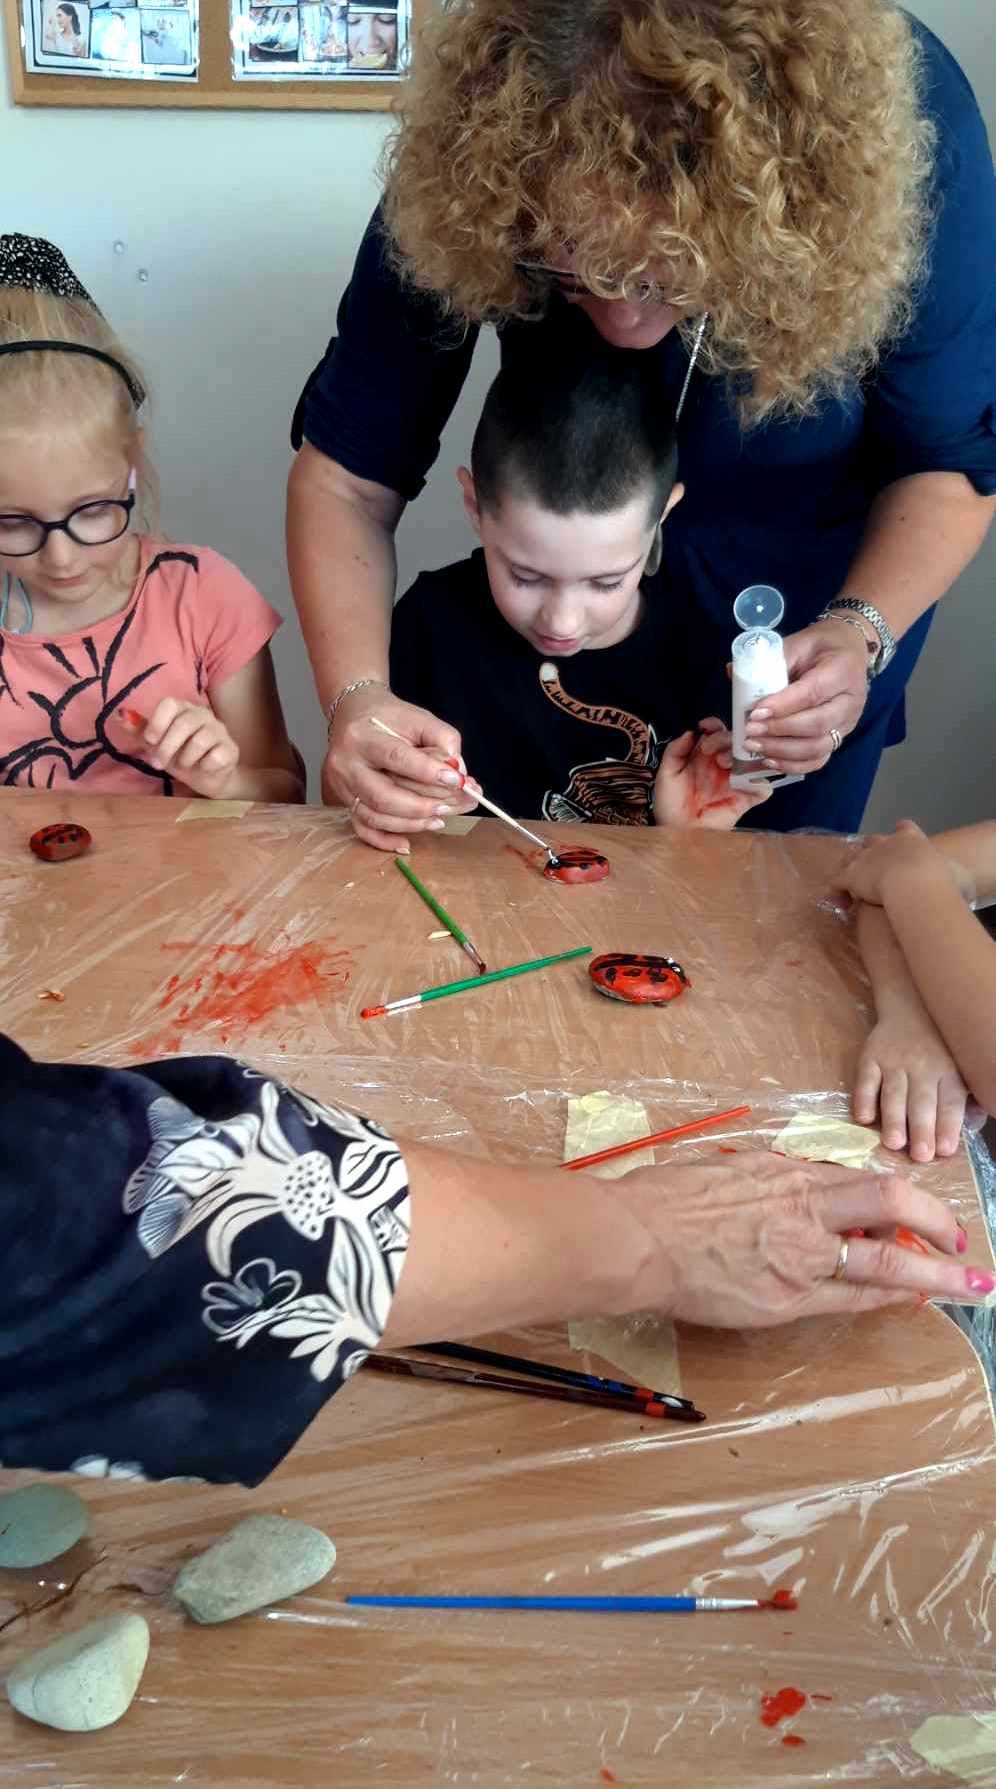 Integracyjne zajęcia w "Krainie uśmiechu" | Nauczyciel pomaga dziecku malować kamień.jpeg